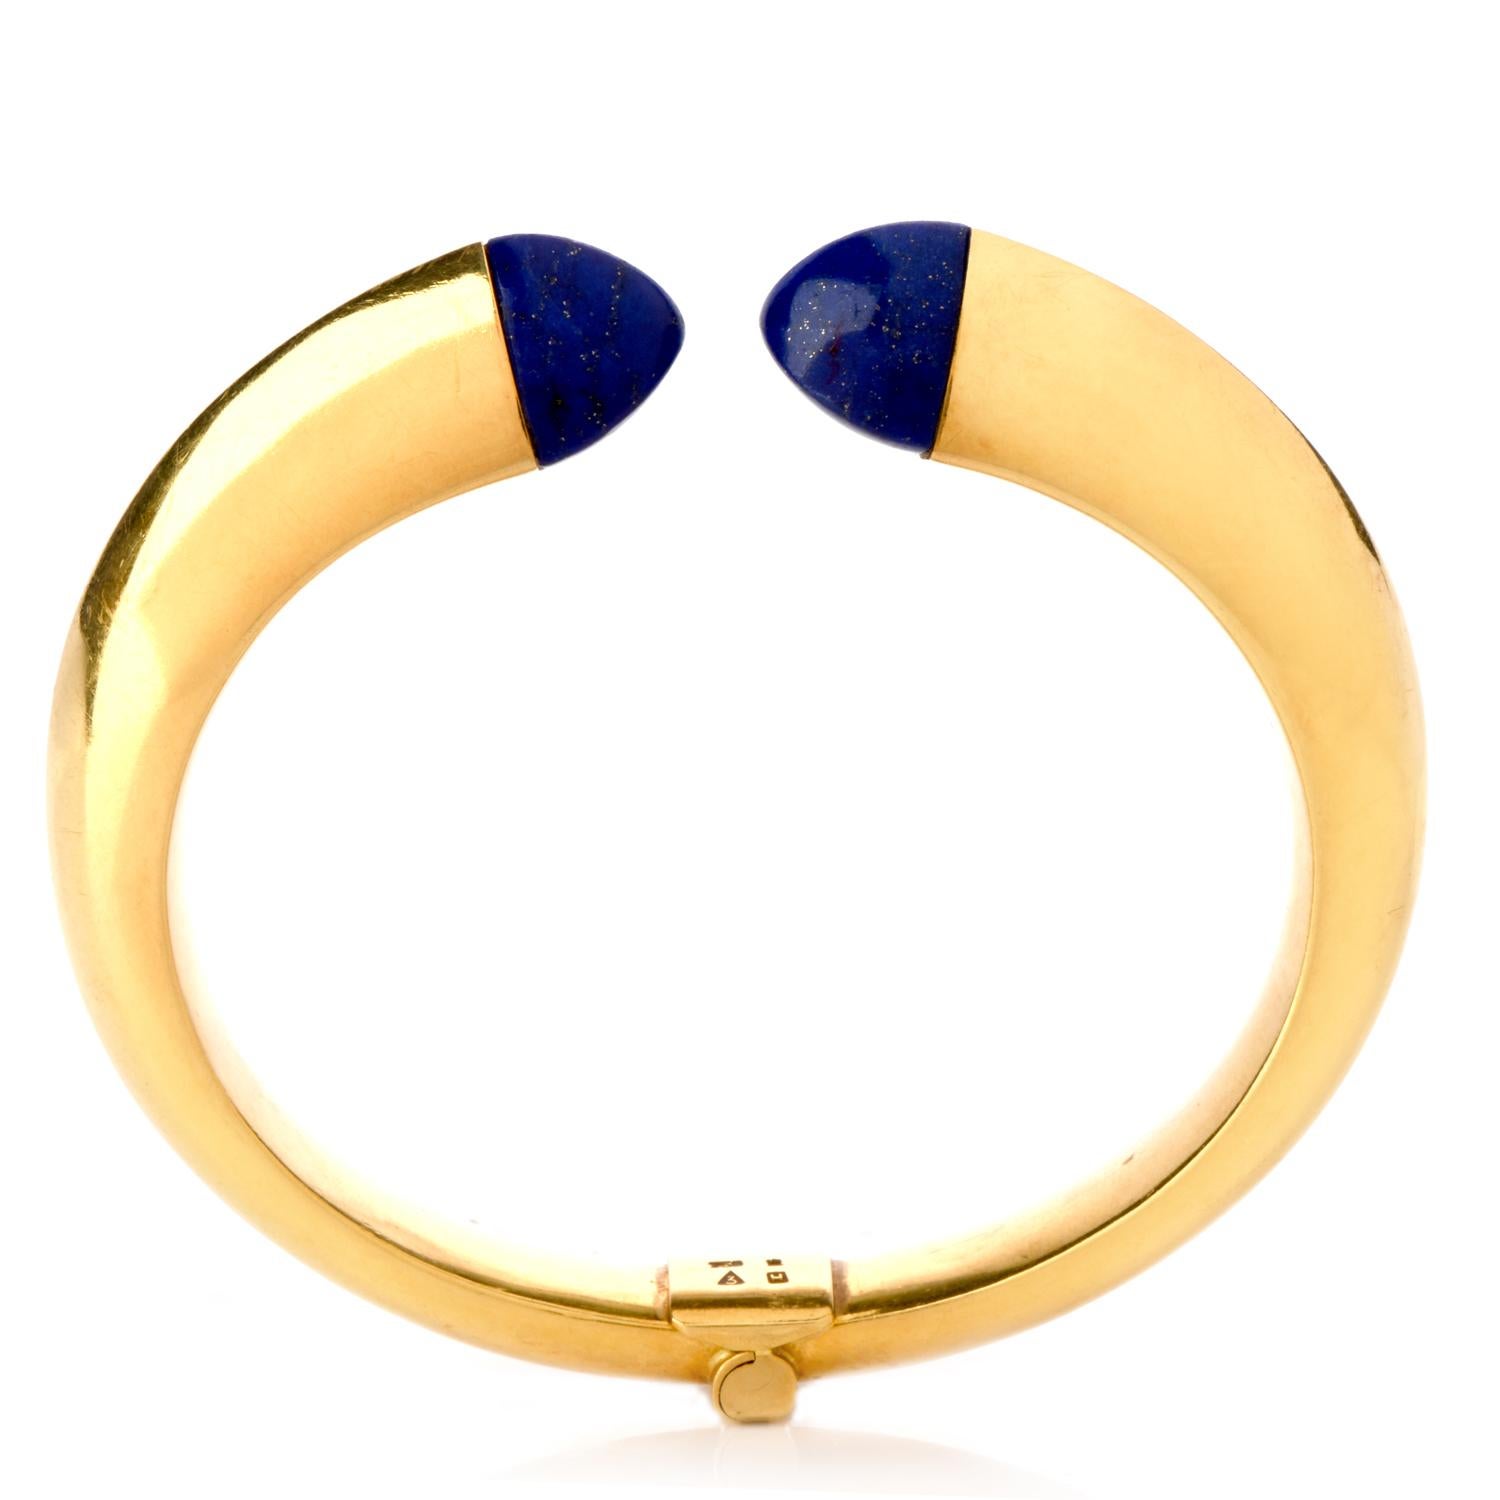 Sugarloaf Cabochon Chic Lapis Lazuli 18 Karat Yellow Gold Chic Cuff Bangle Bracelet